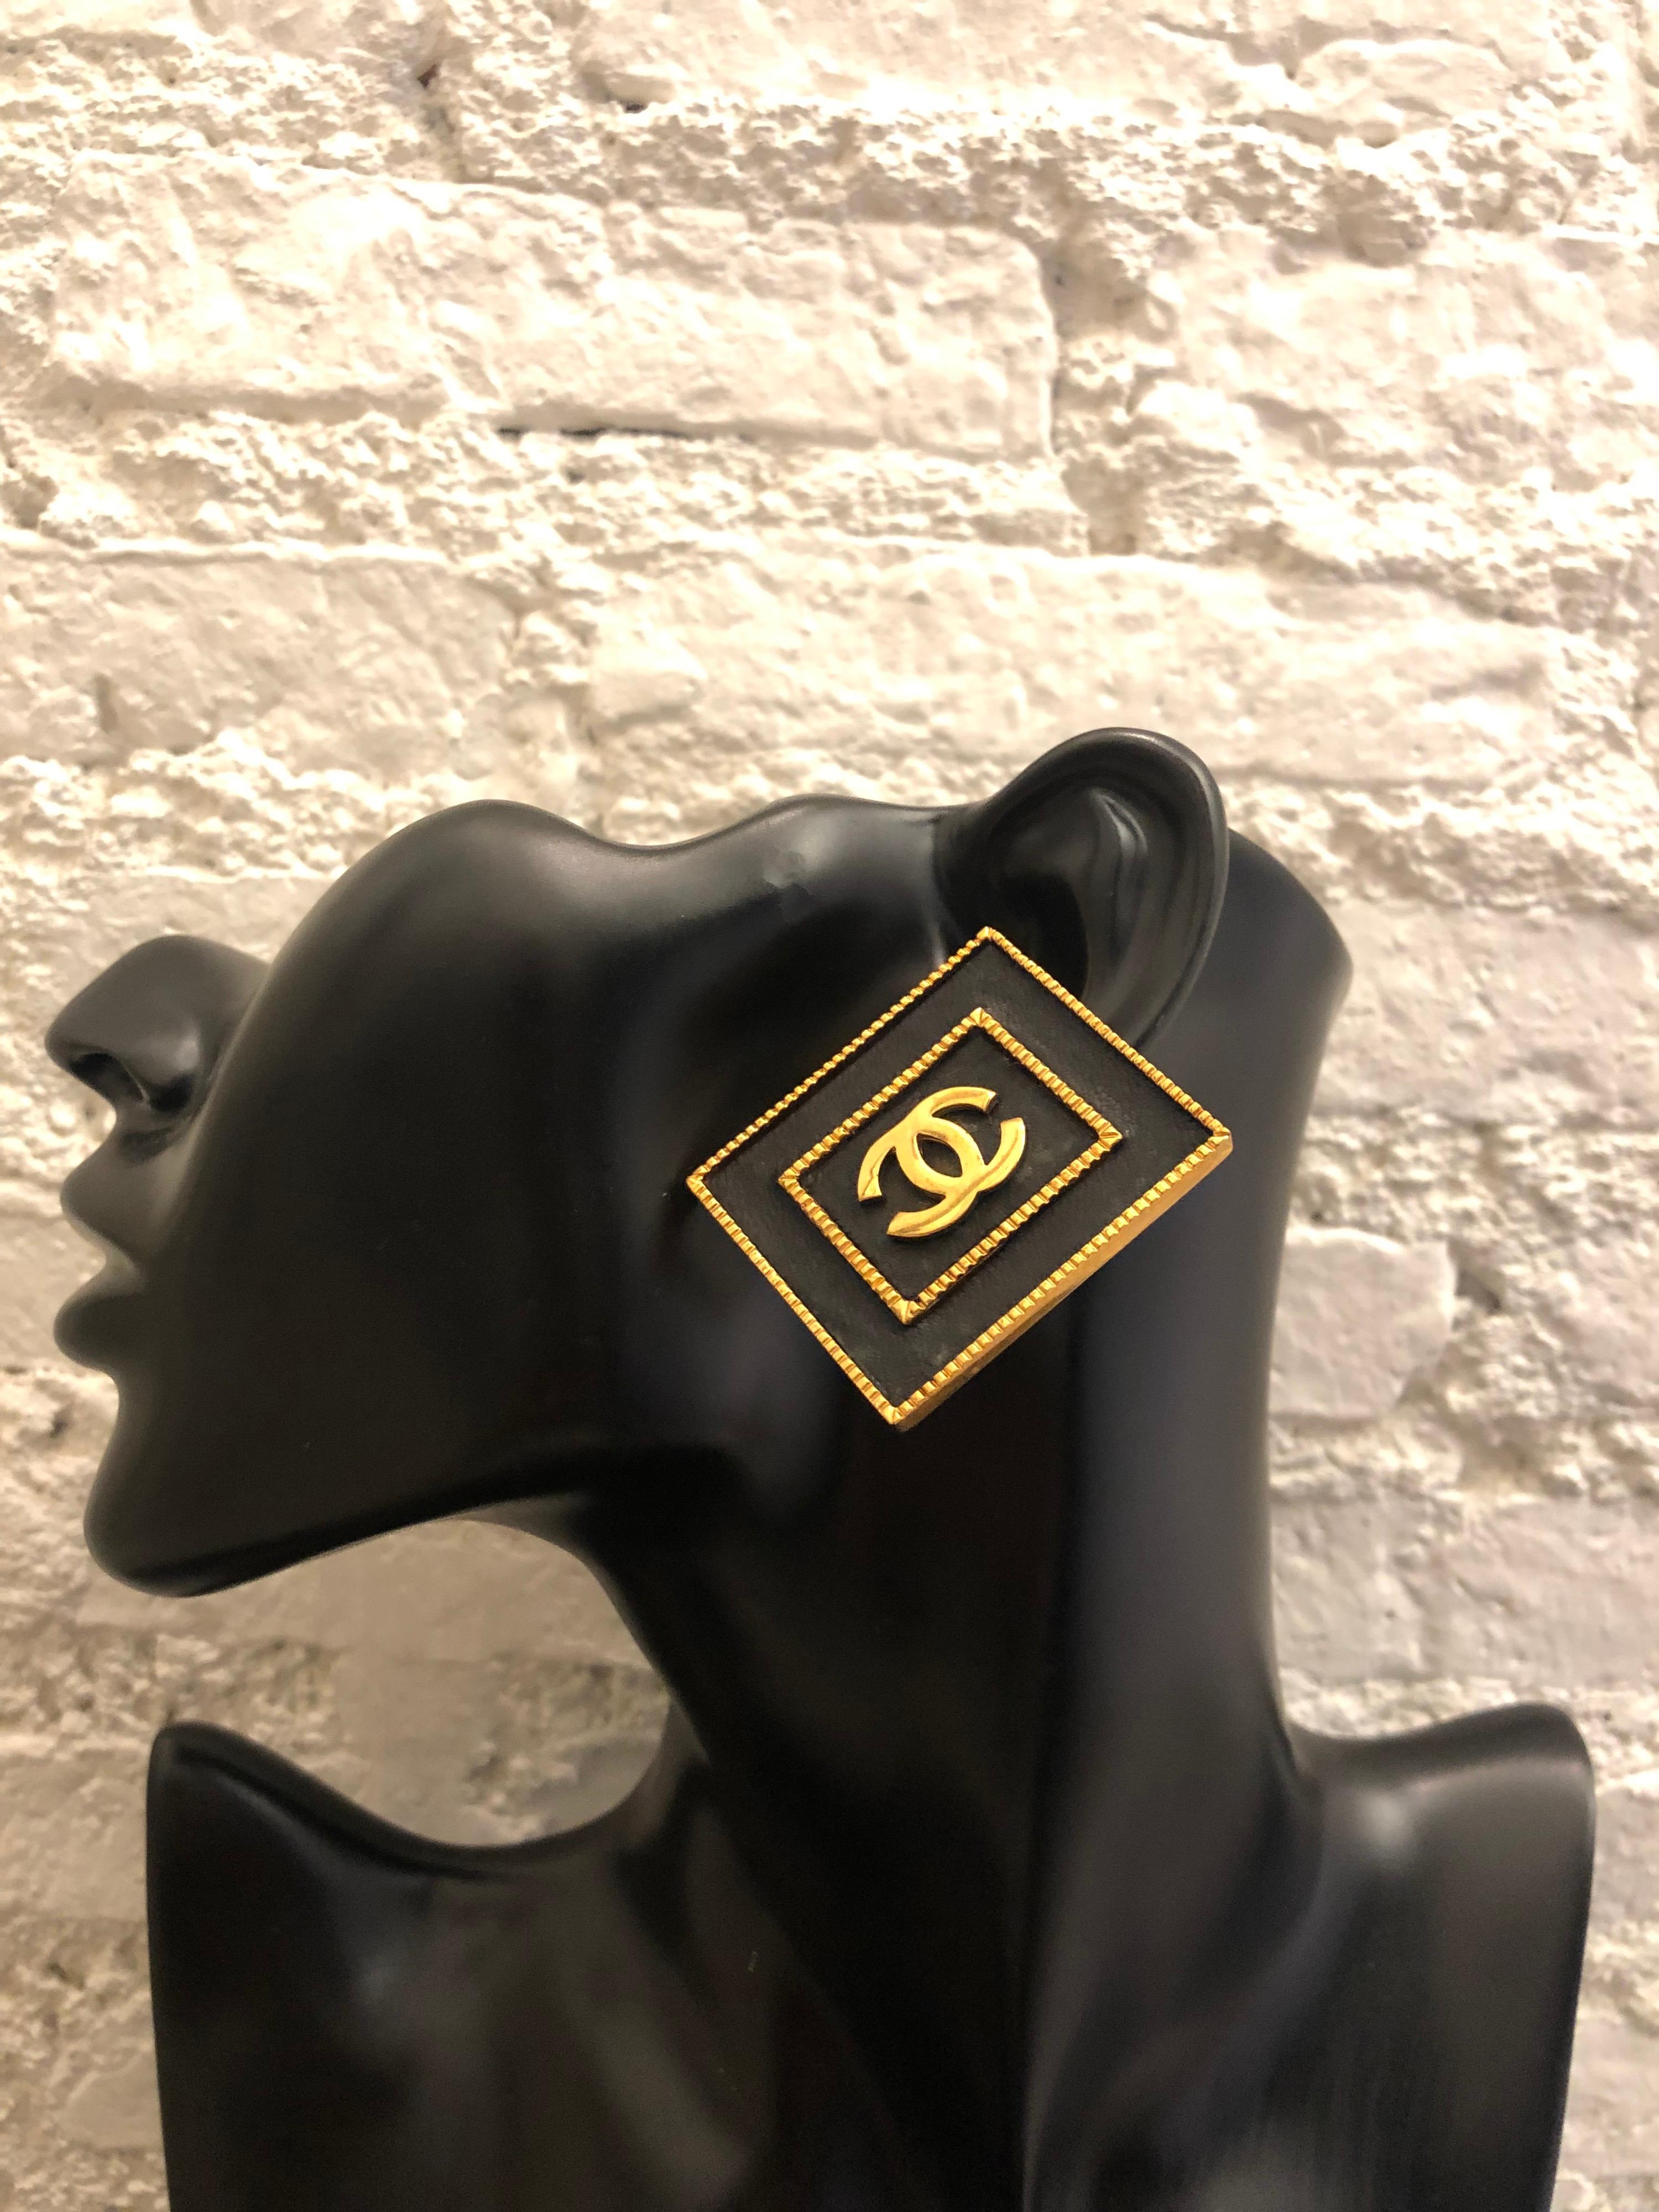 Seltene goldfarbene Ohrringe mit quadratischem Rahmen aus schwarzem Leder aus den frühen 1990er Jahren. Jumbo-Ohrringe im Clip-on-Stil. Gestempelt 28 made in France. Maße: 4 x 3,4 cm.

Condit - Geringe altersbedingte und normale